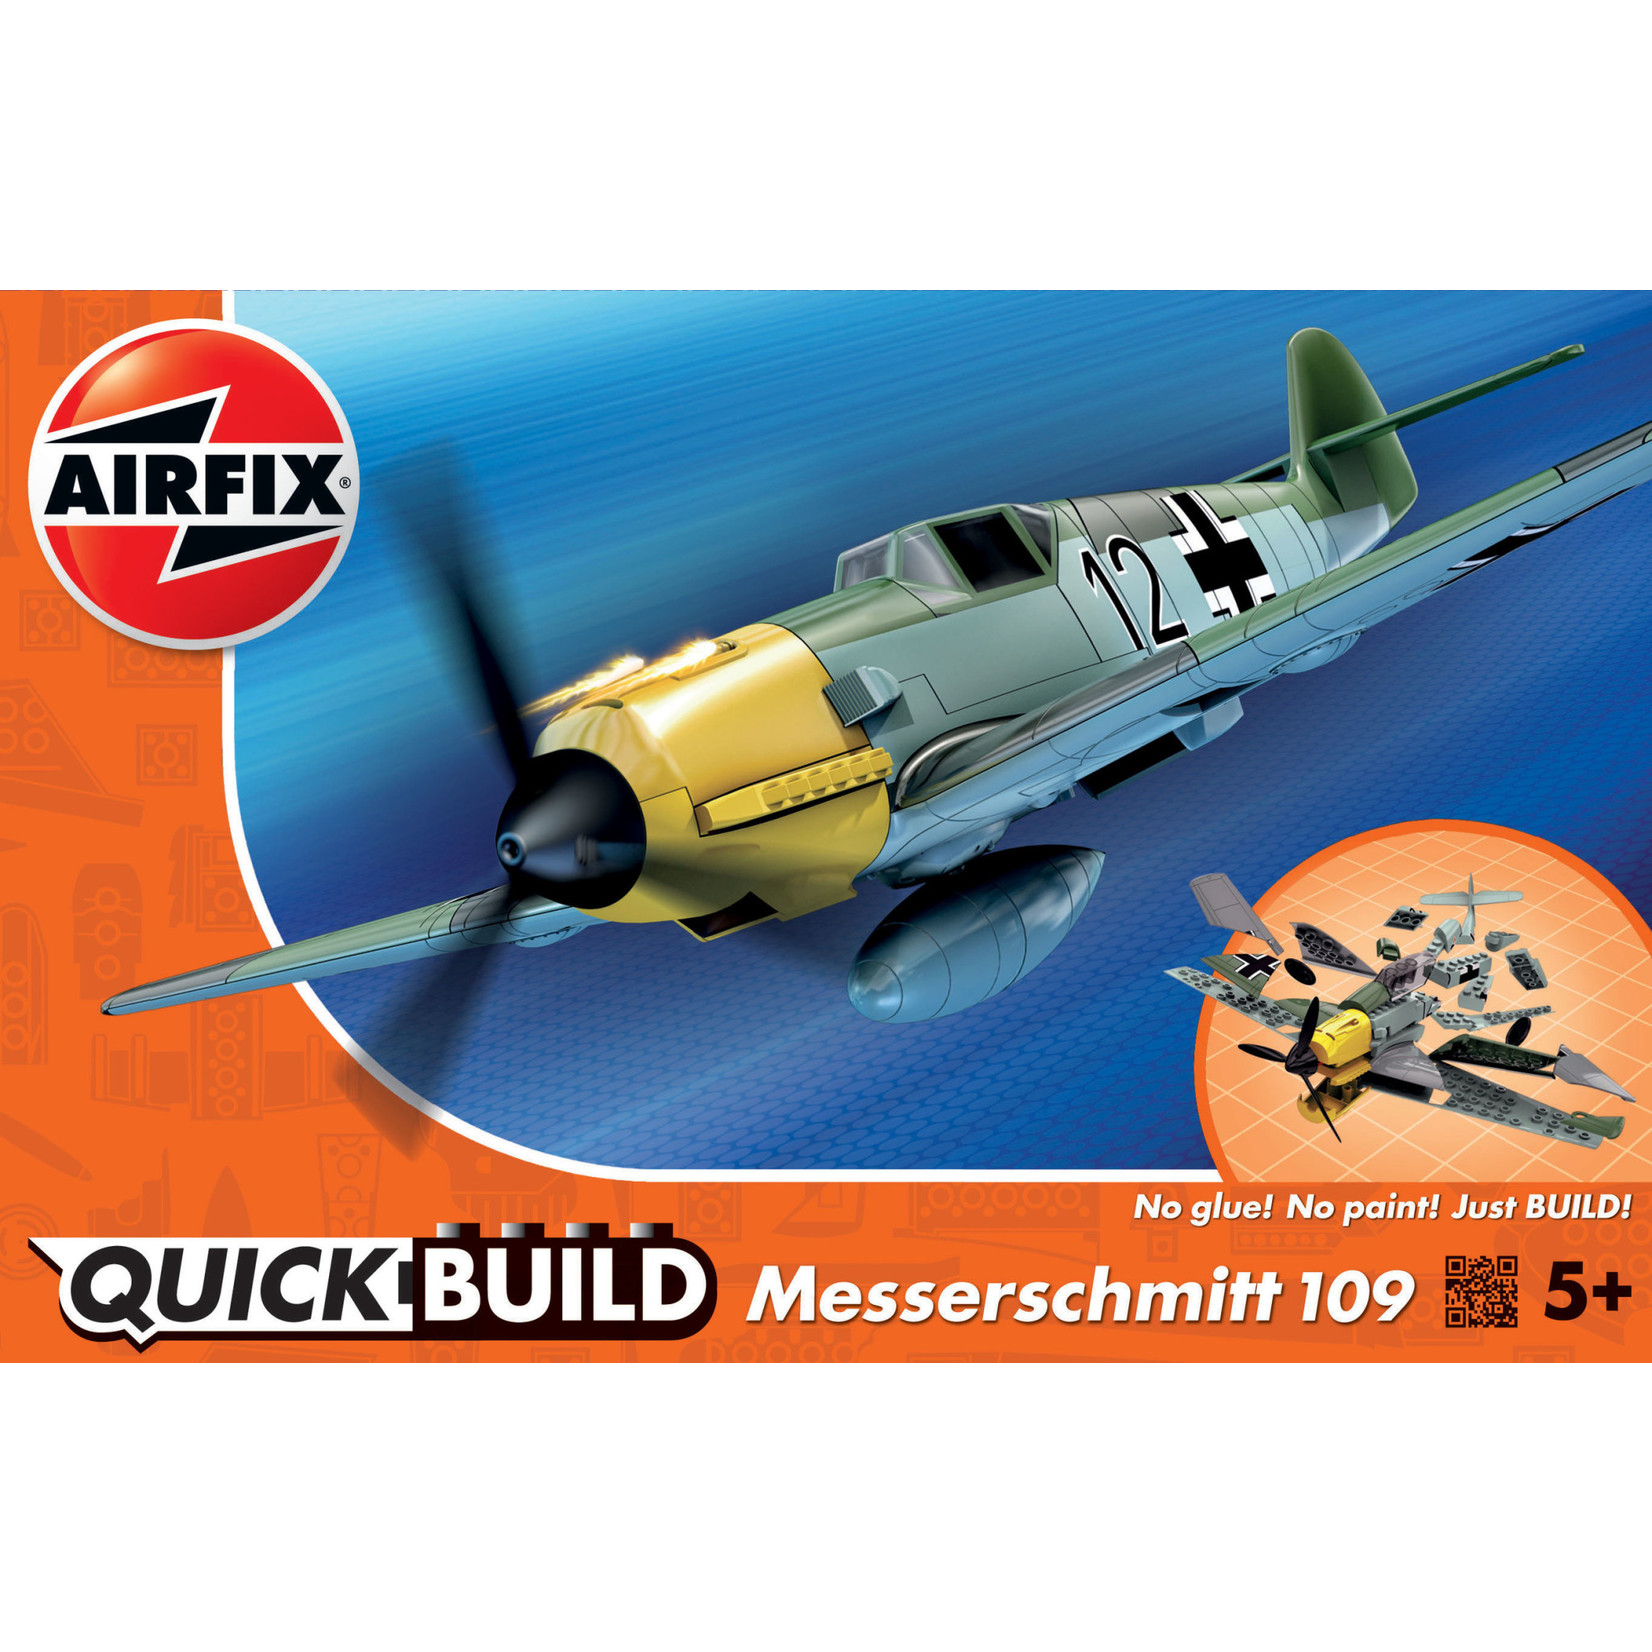 Airfix J6001 Airfix Messerschmitt Bf109 Quickbuild